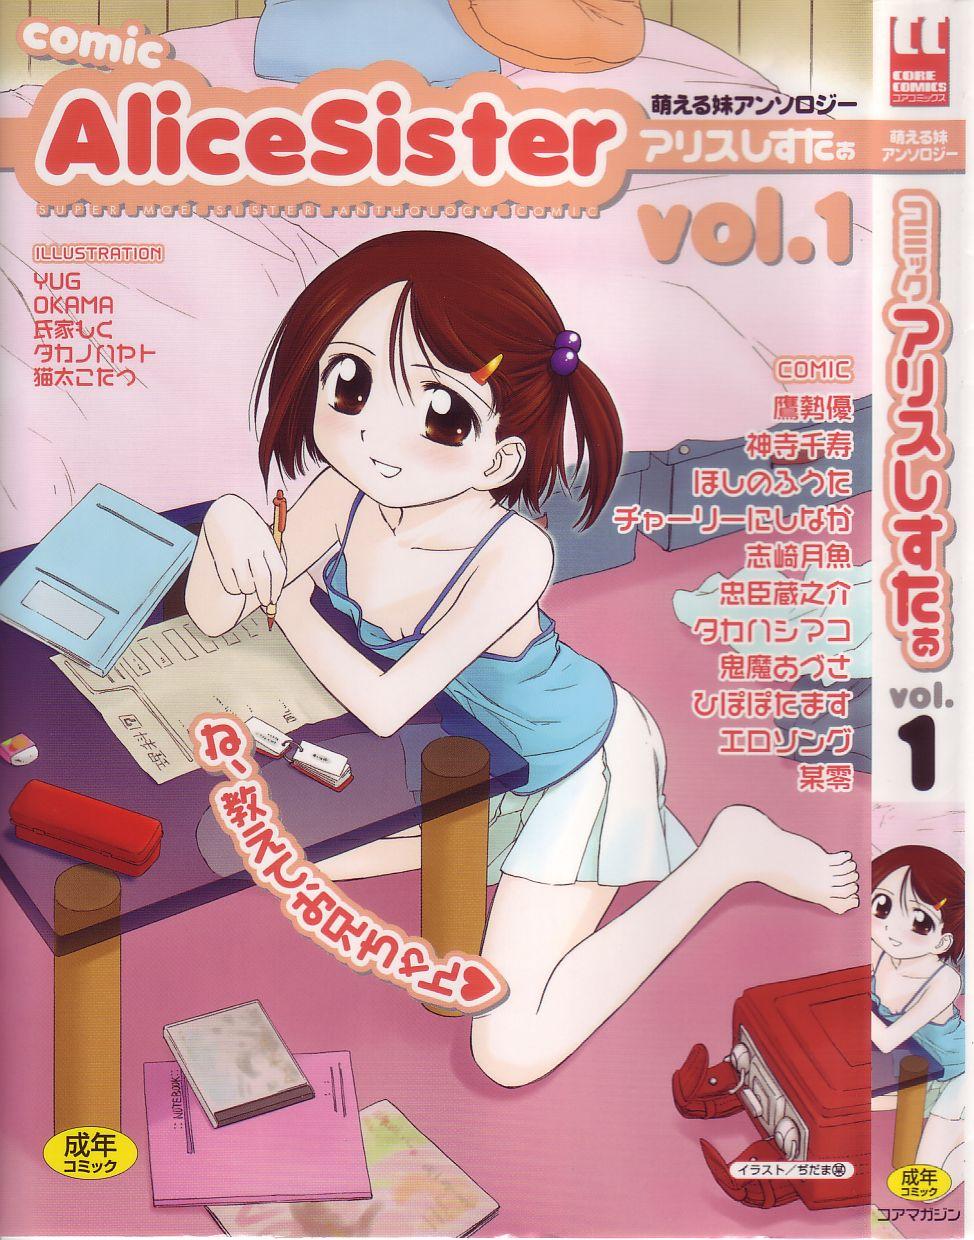 Comic Alice Sister Vol.1 0